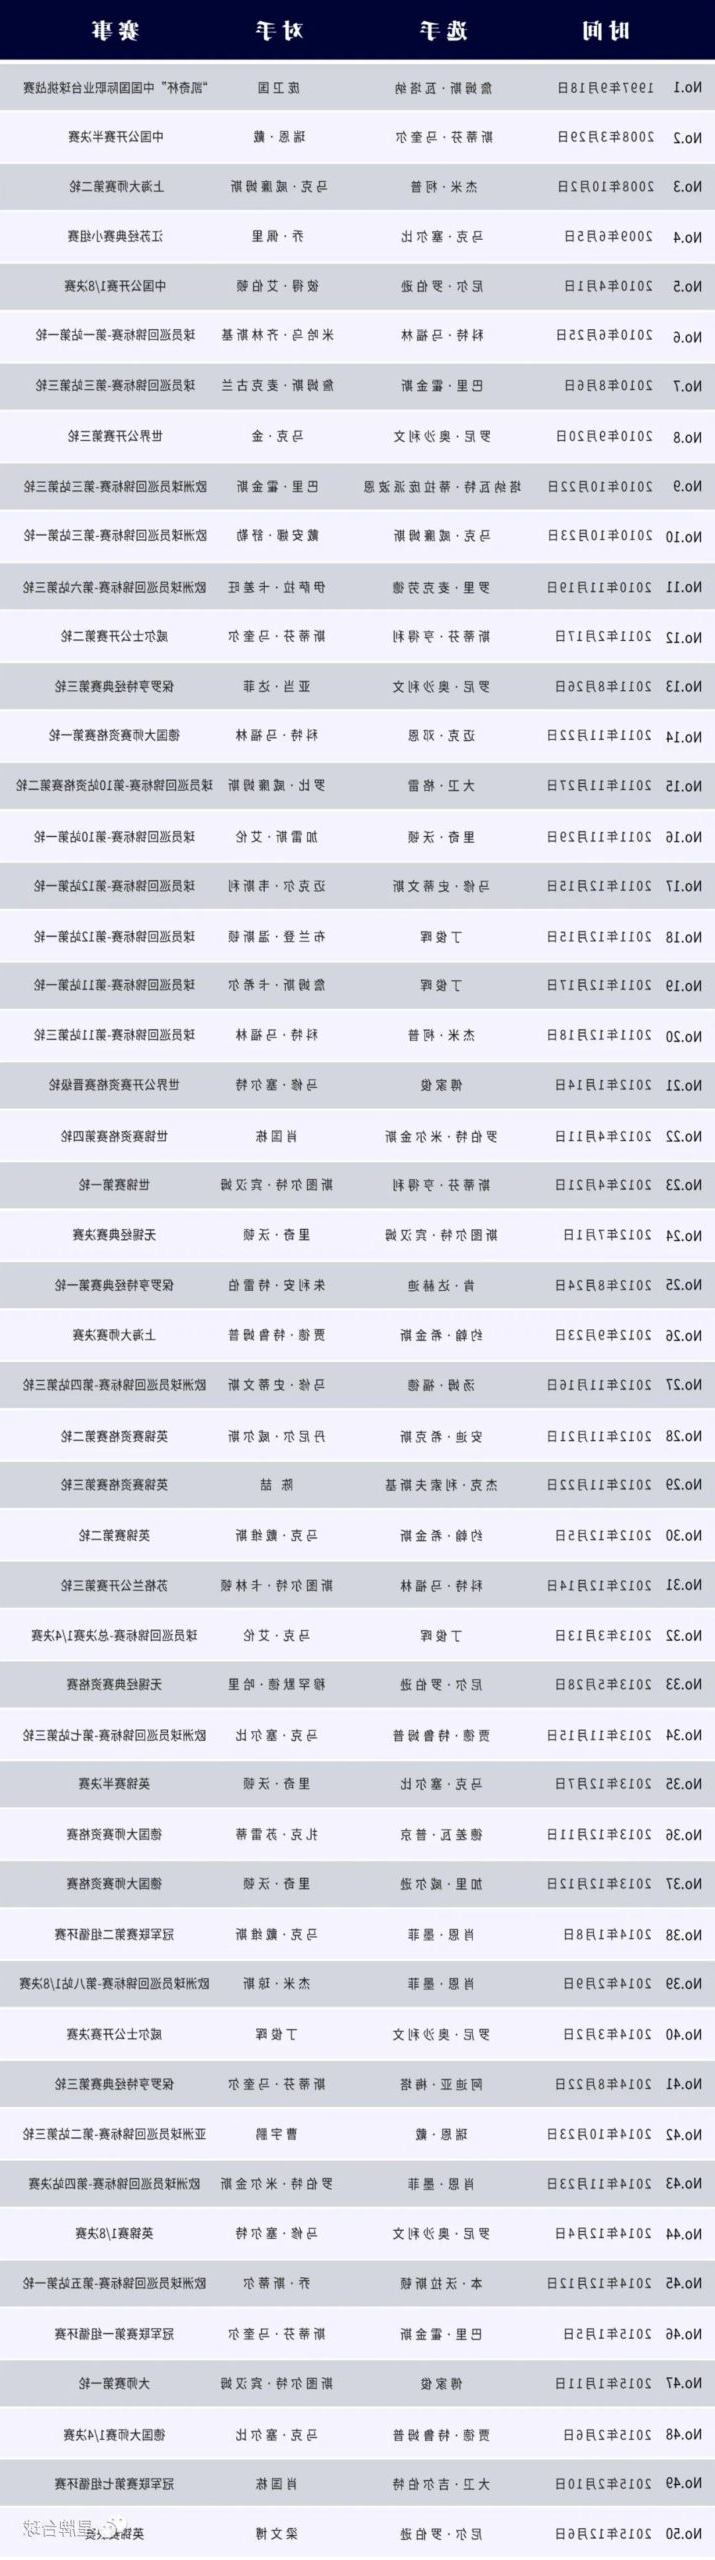 香港大师赛半决赛 傅家俊决胜局轰出147 kok娱乐平台
台球桌见证的第111个满分杆！